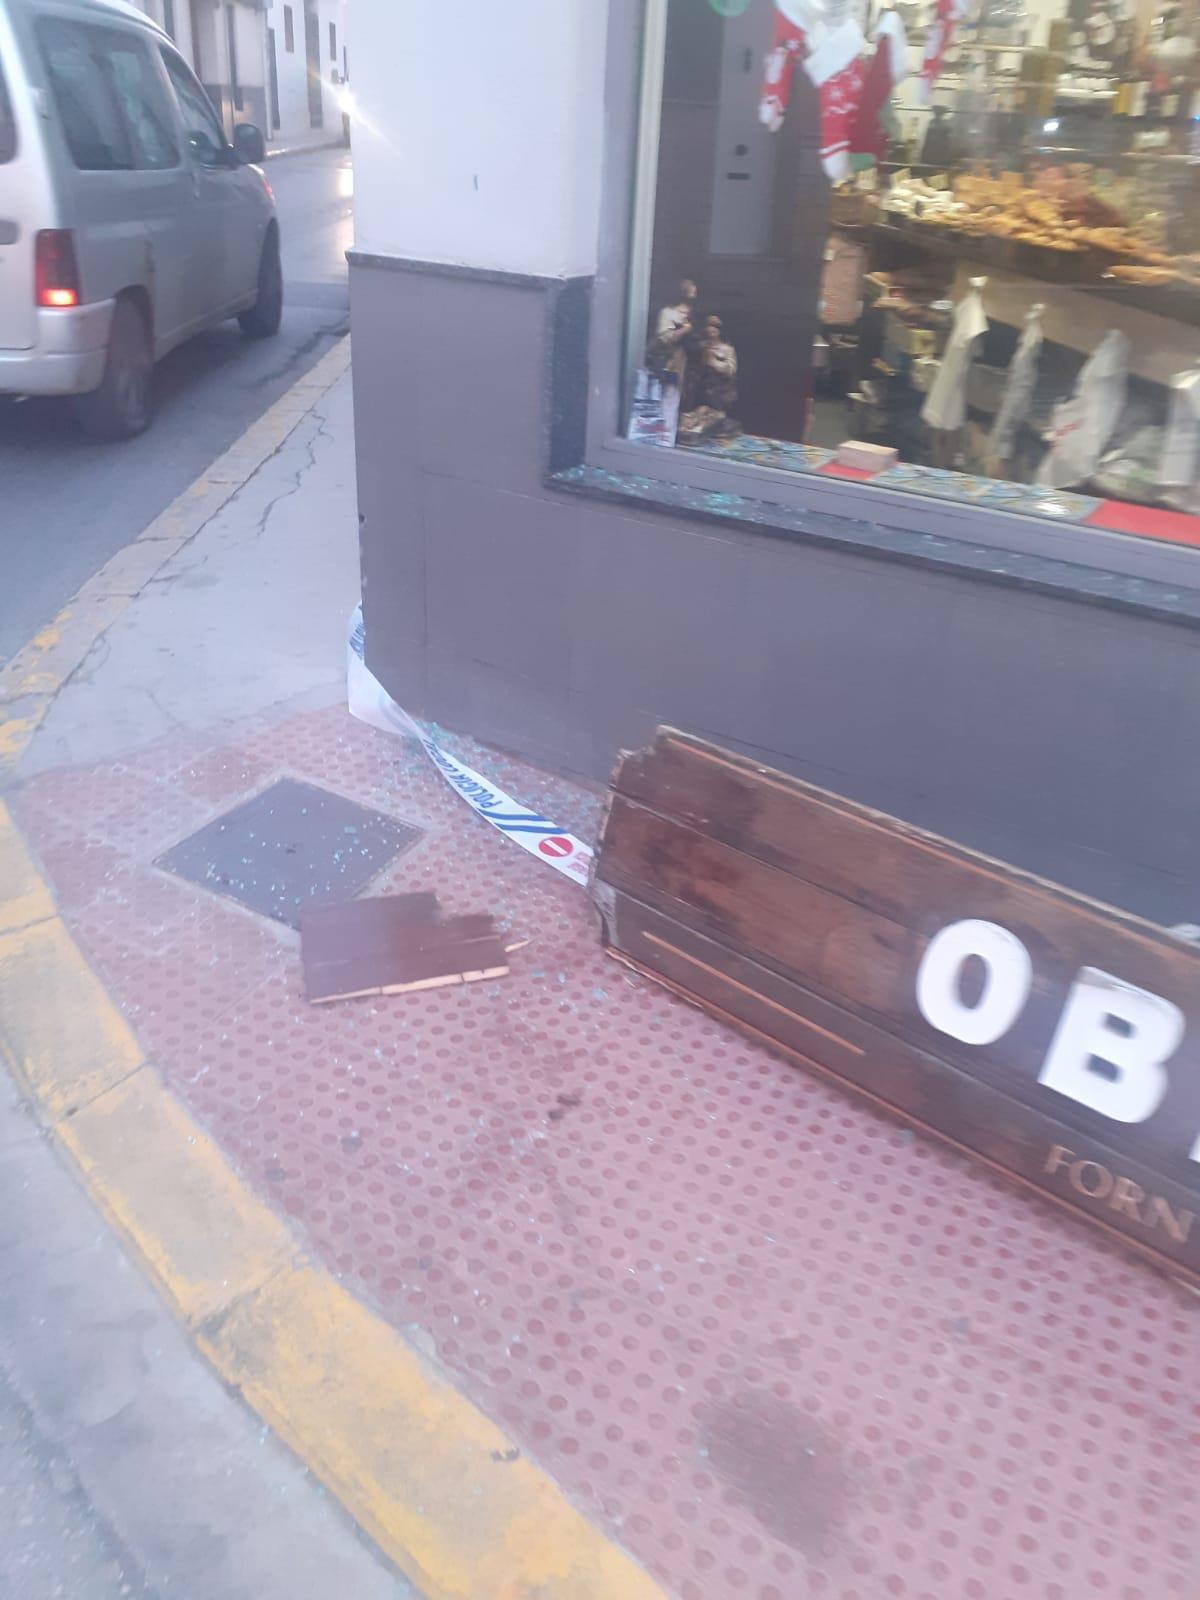 El impacto de un camión tira el cartel de uno de los comercios que están entre Rafael Valls y Valencia y rompe la cristalera.